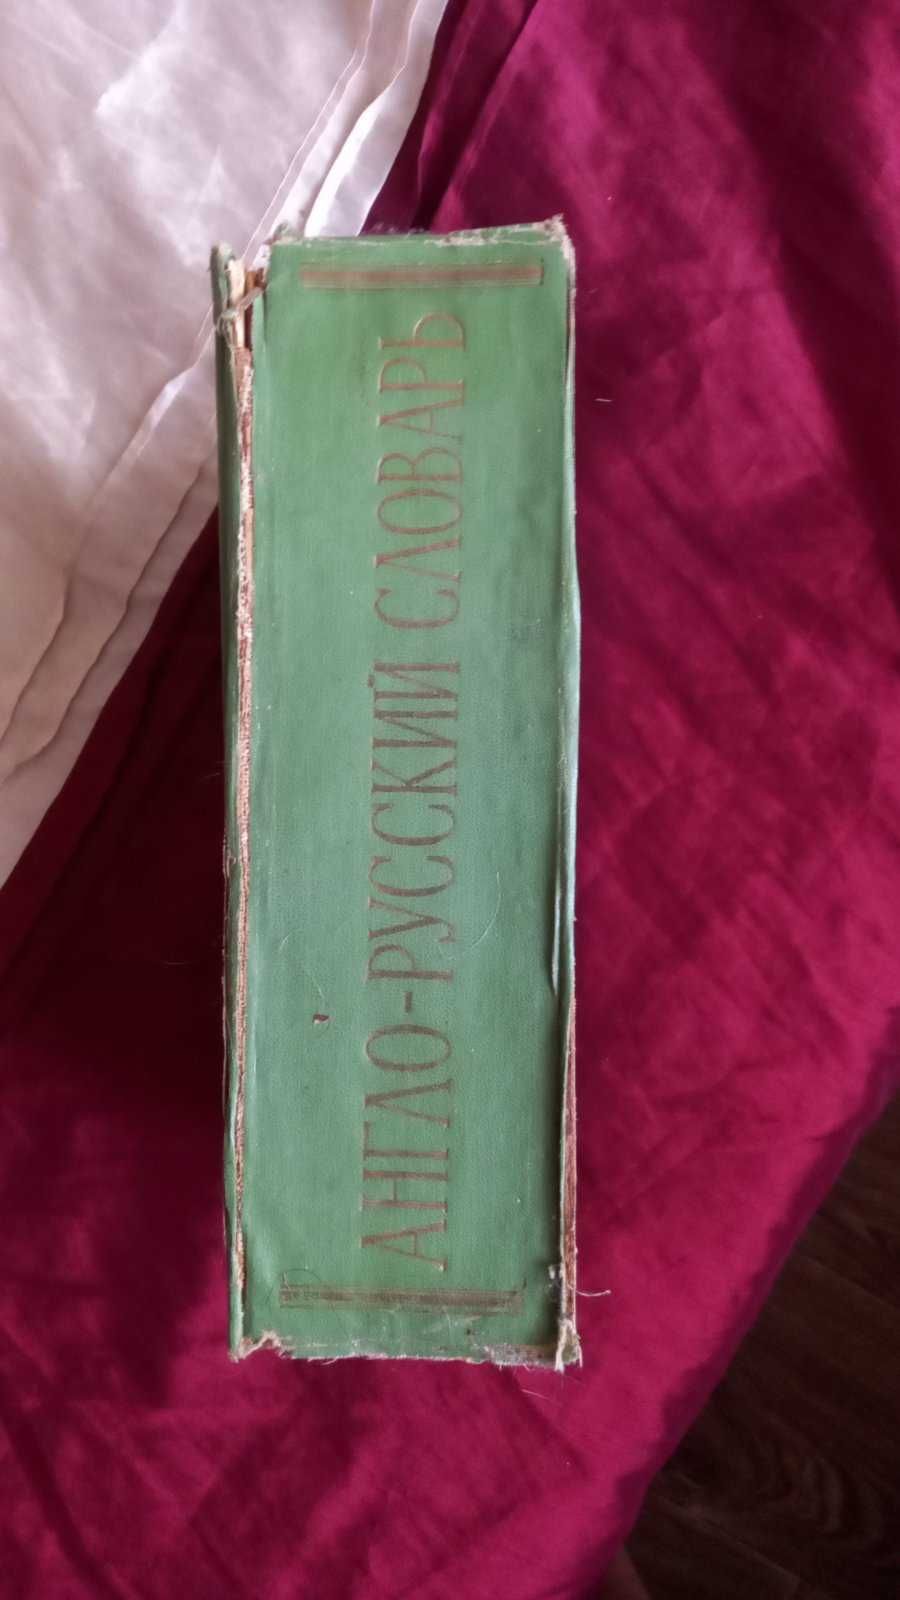 Англо-русский словарь Мюллер 1964